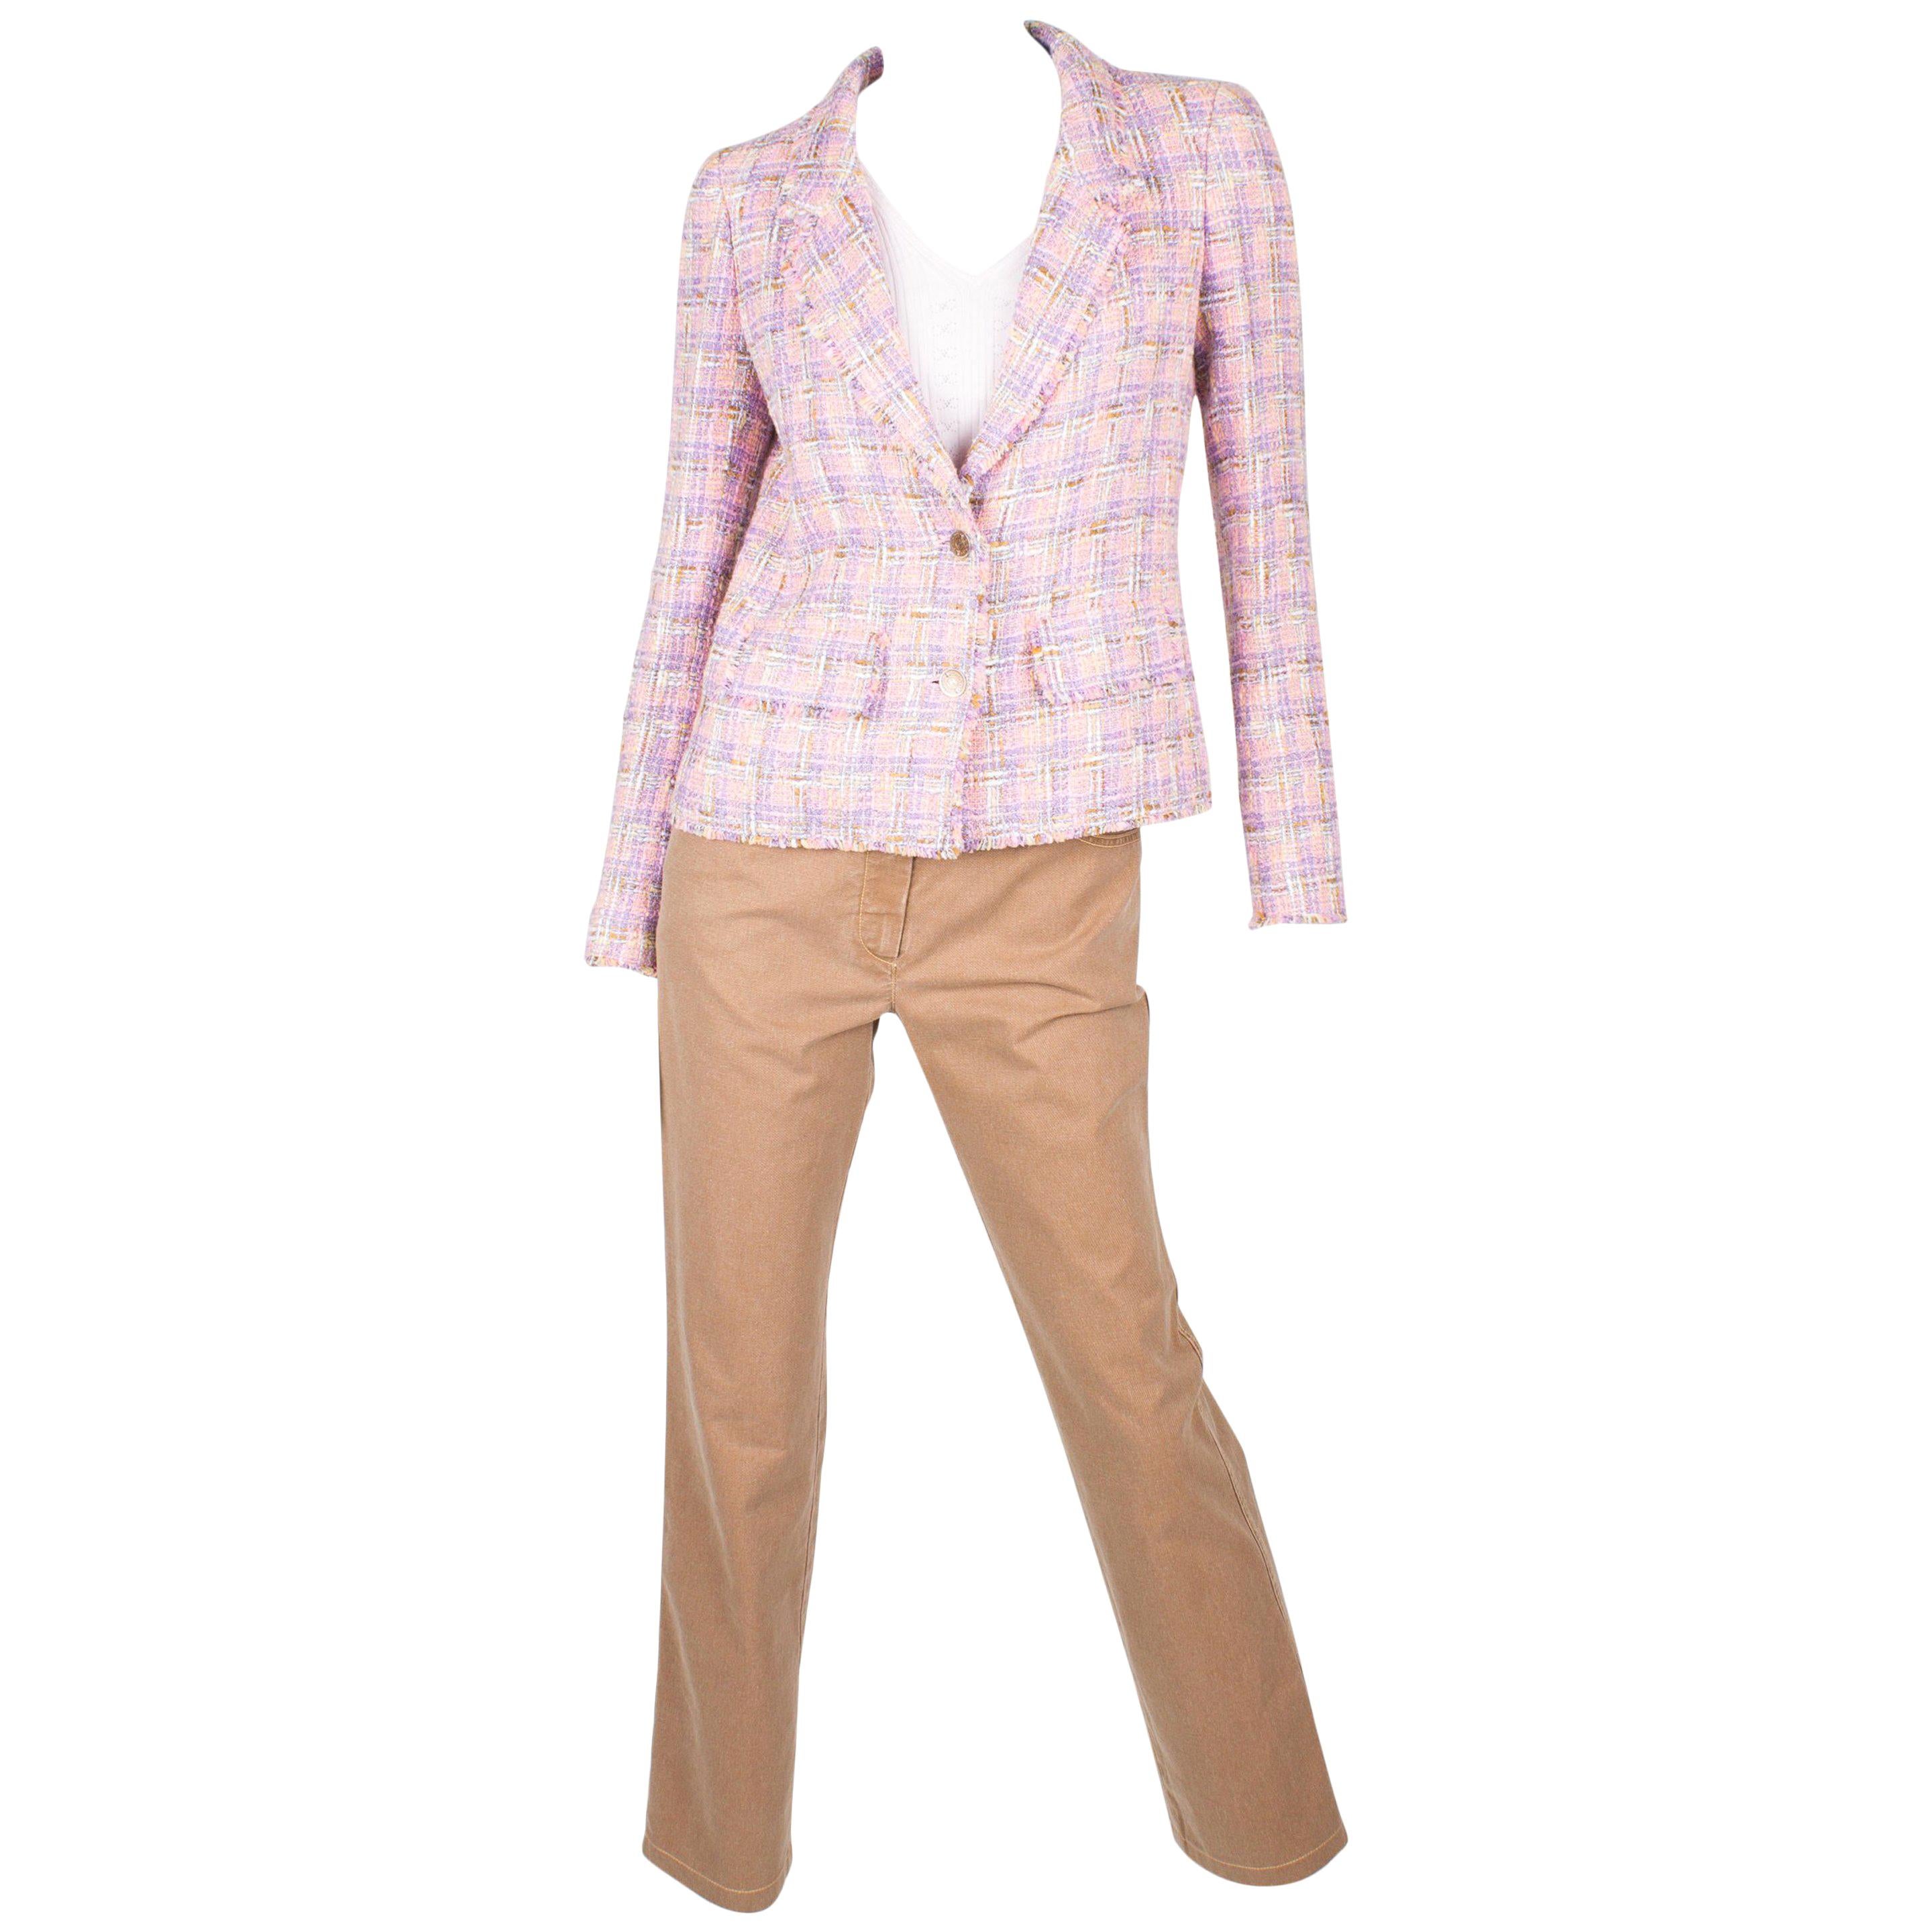 Chanel 3-pcs Suit Jacket, Pants & Top - pink/purple/brown 2005 For Sale